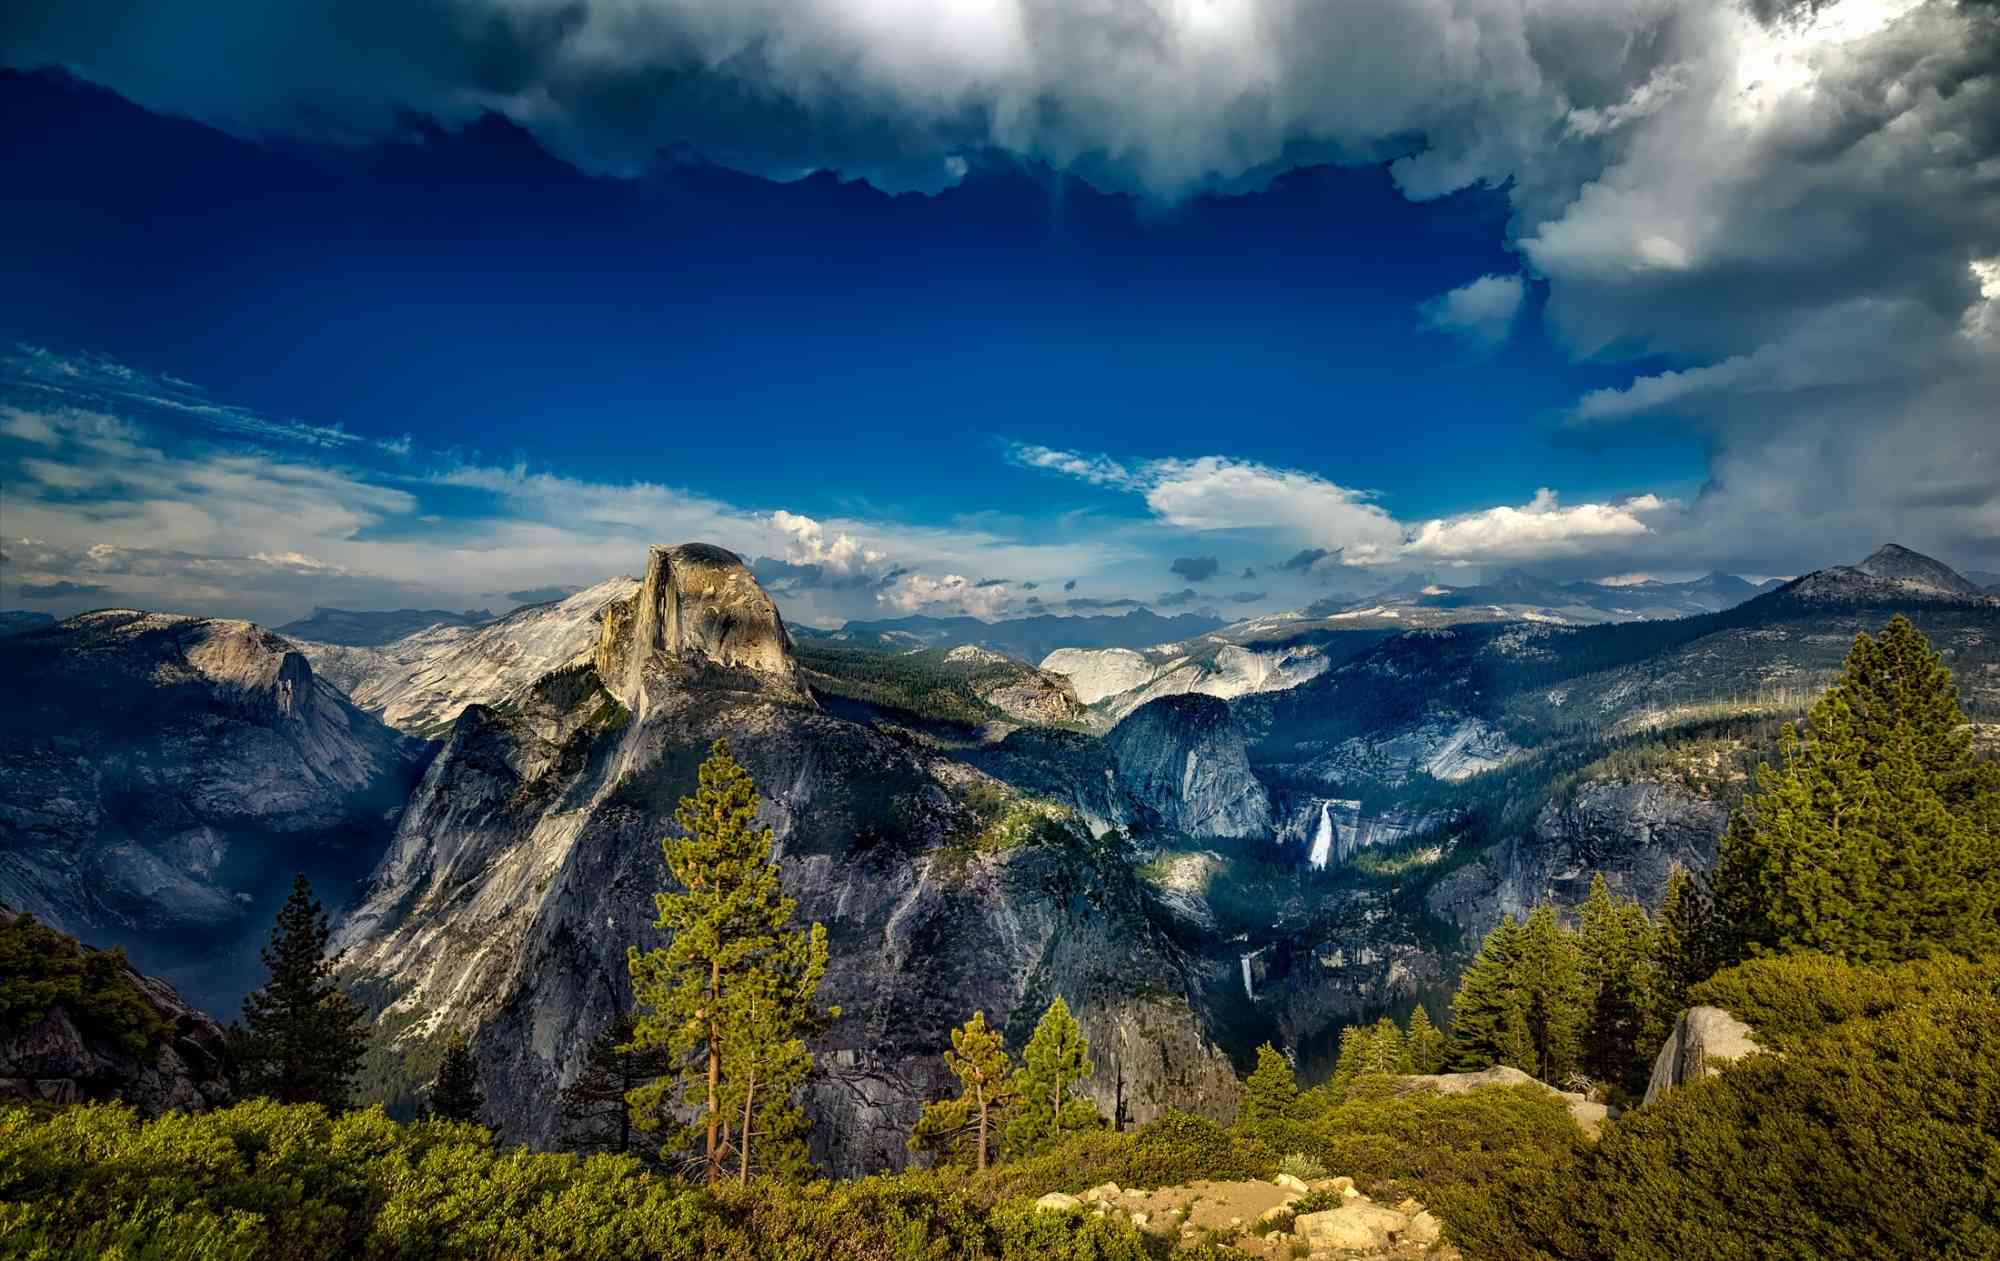 Cloud cover, Yosemite National Park, California 